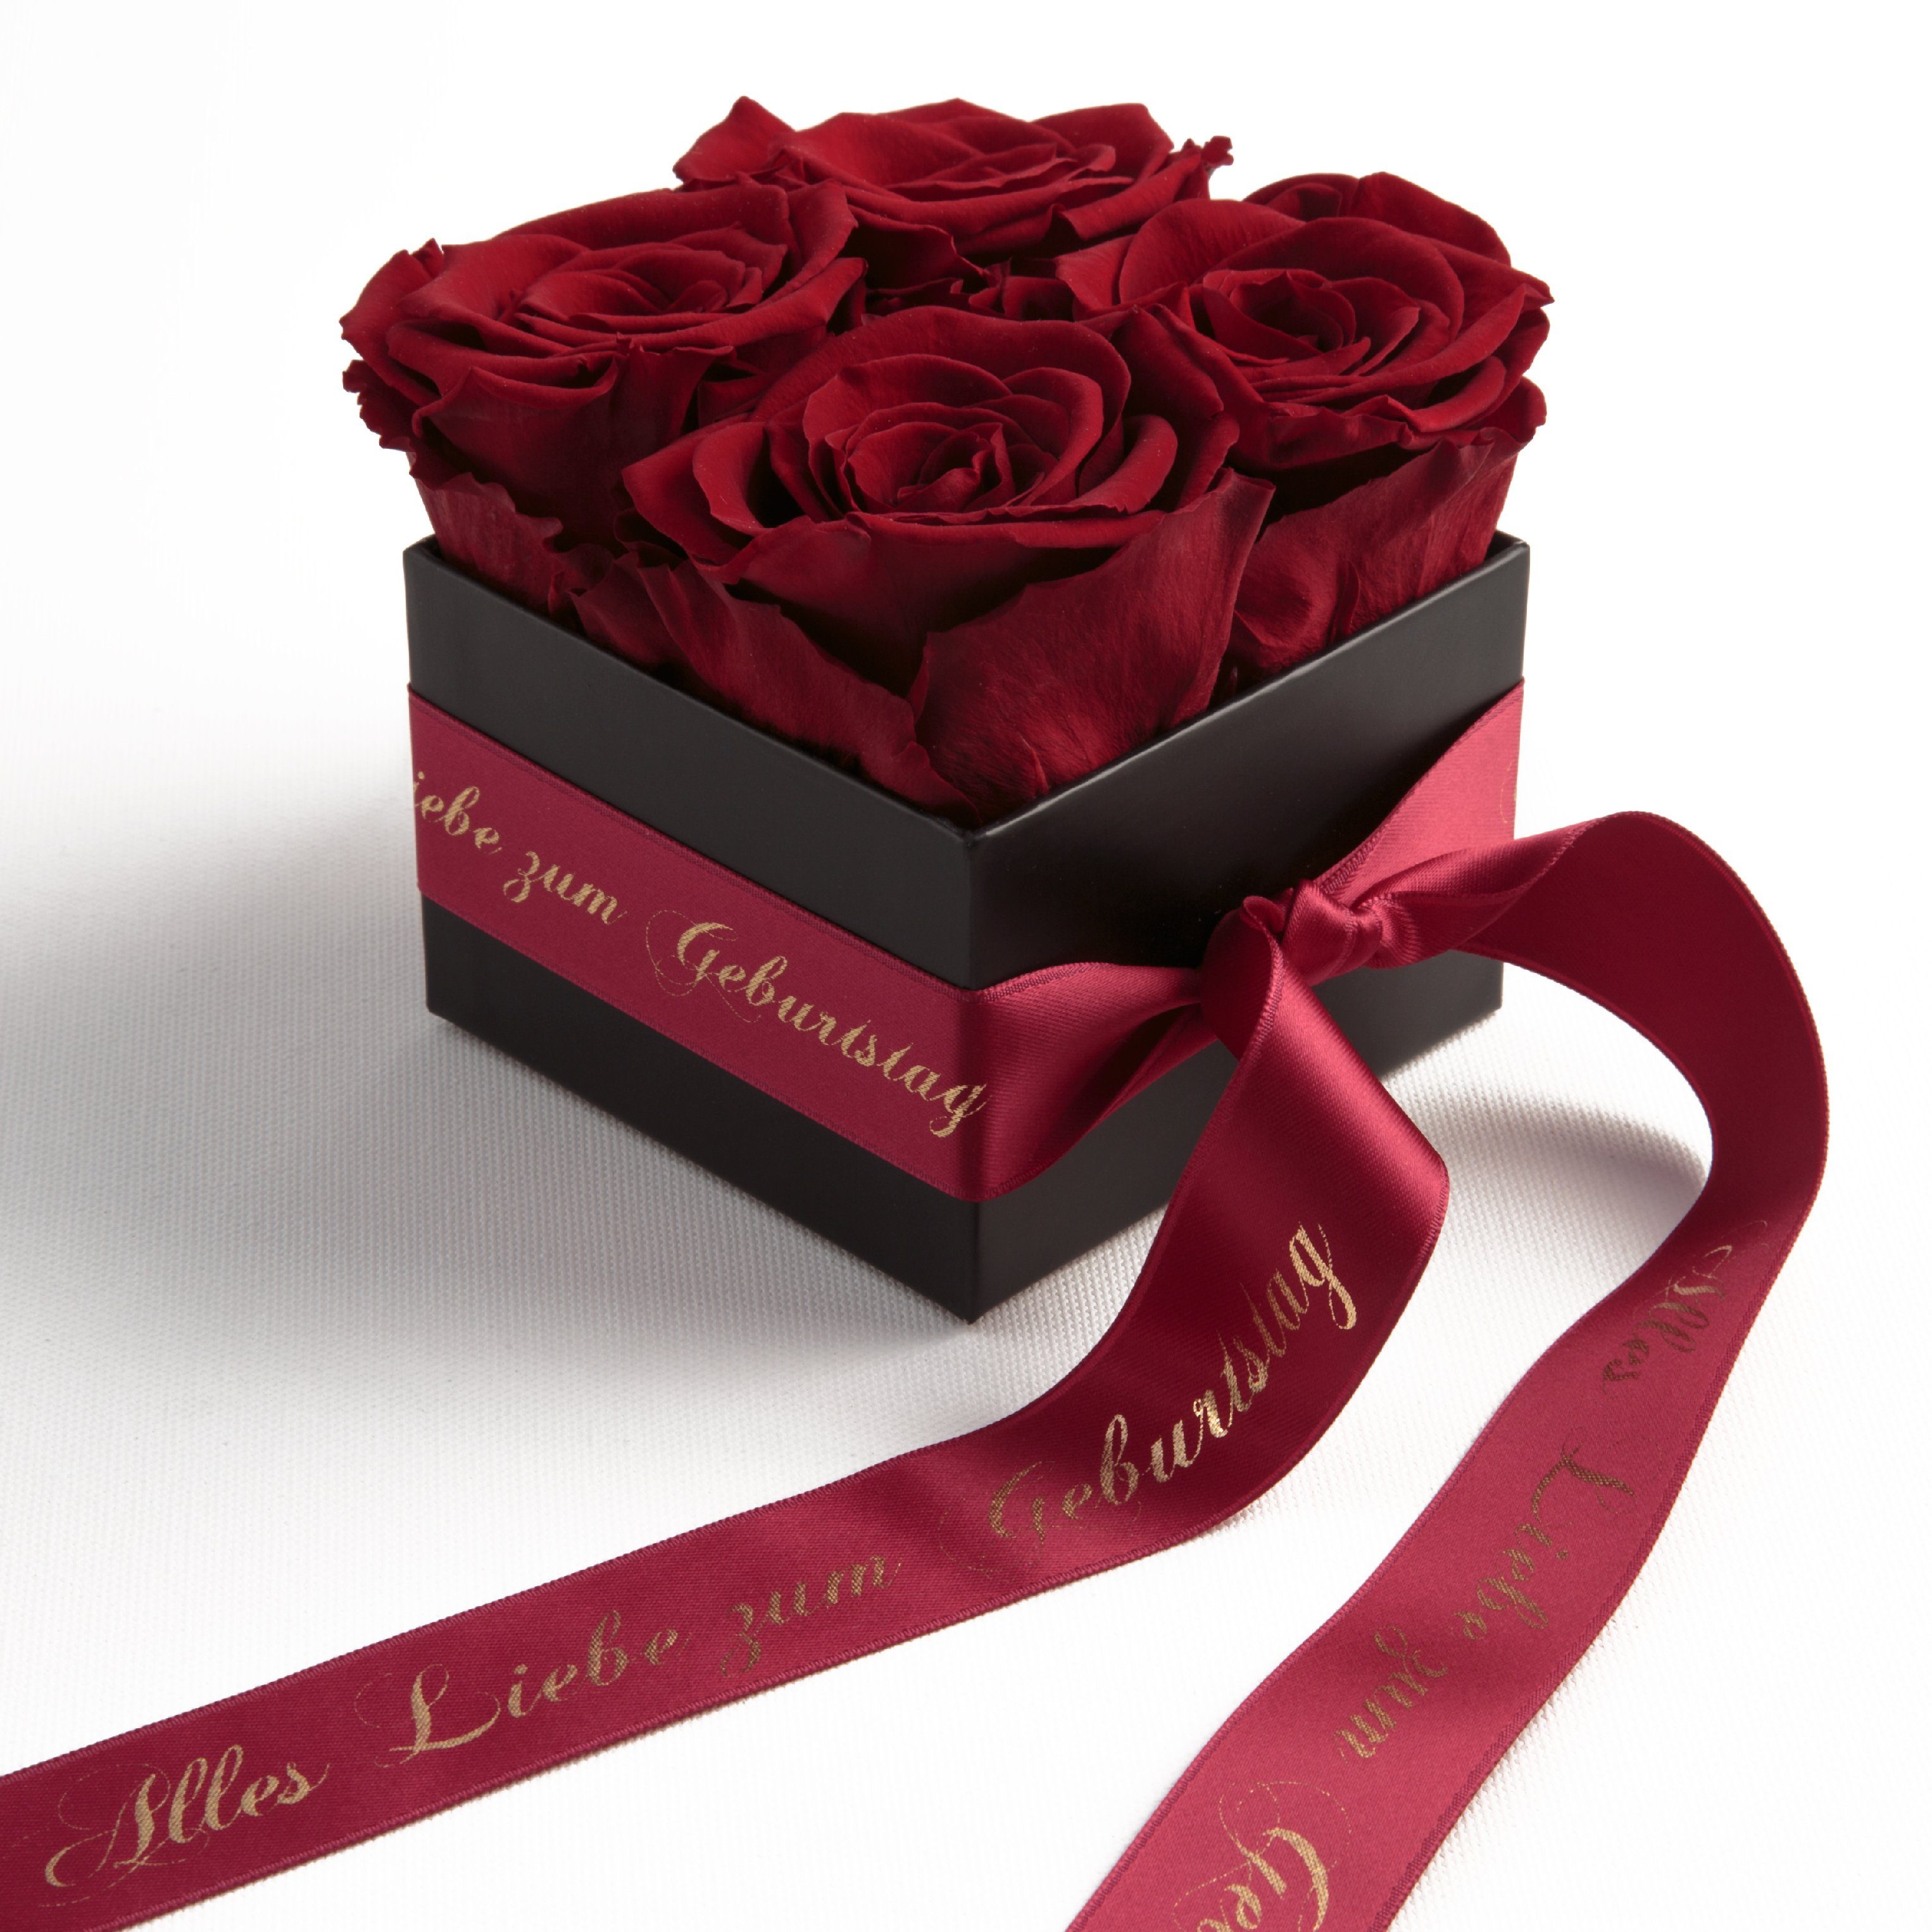 Edel Big Infinity Rosenbox Blumenbox Flowerbox MIT GRAVUR Geburtstag Geschenk 